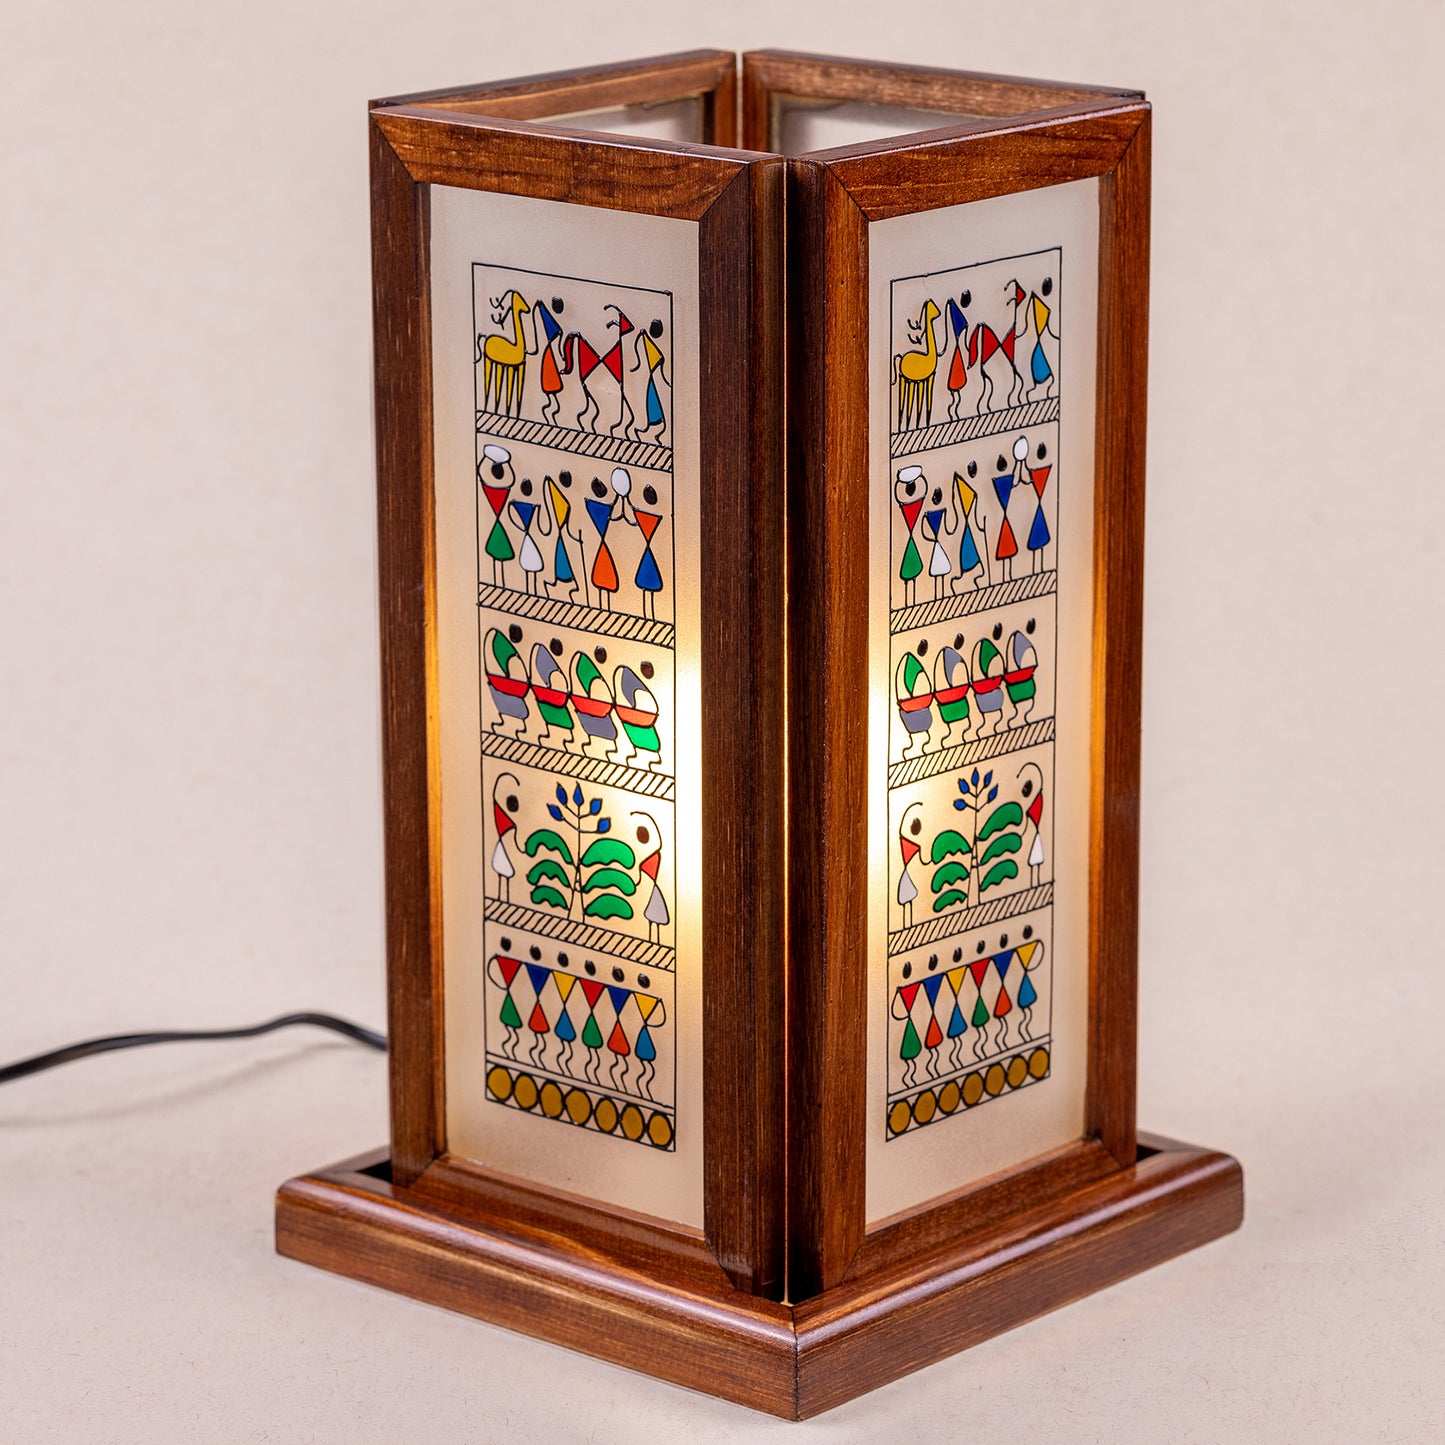 Nrityati - The Celebration Desk Lamp